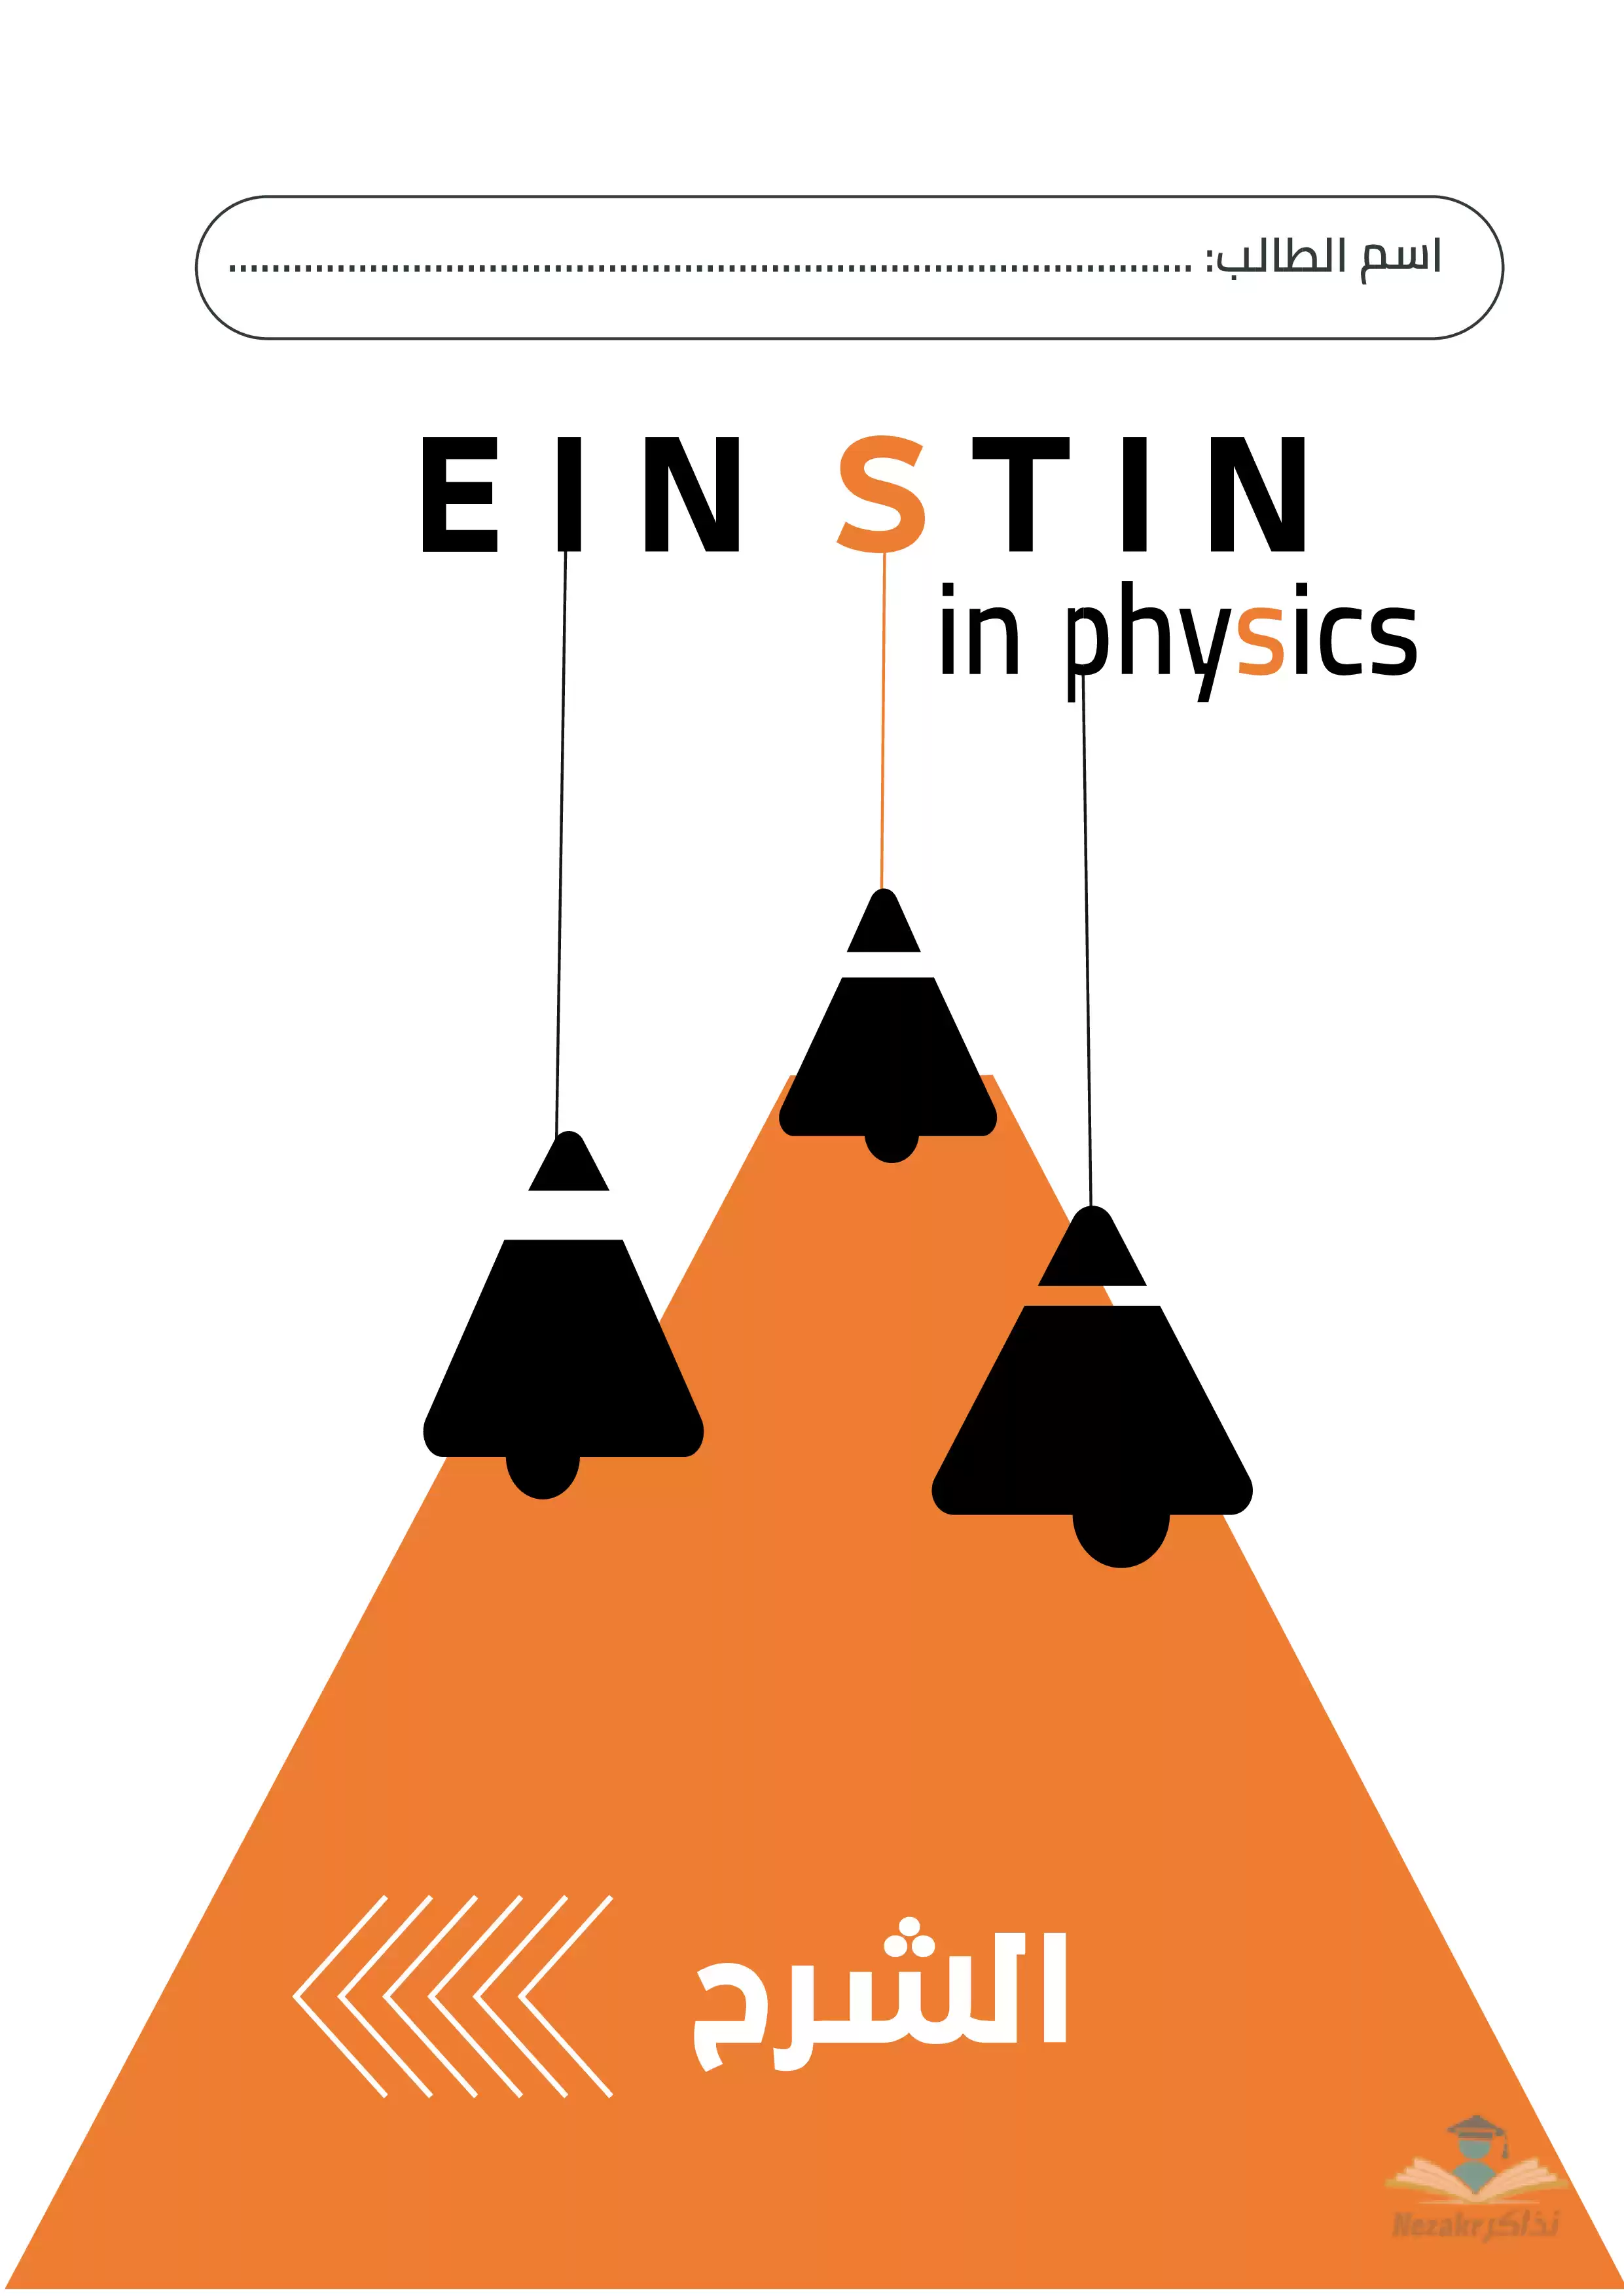 مذكرة أينشتاين في الفيزياء للصف الأول الثانوي الفصل الدراسي الثاني (جزء الشرح)